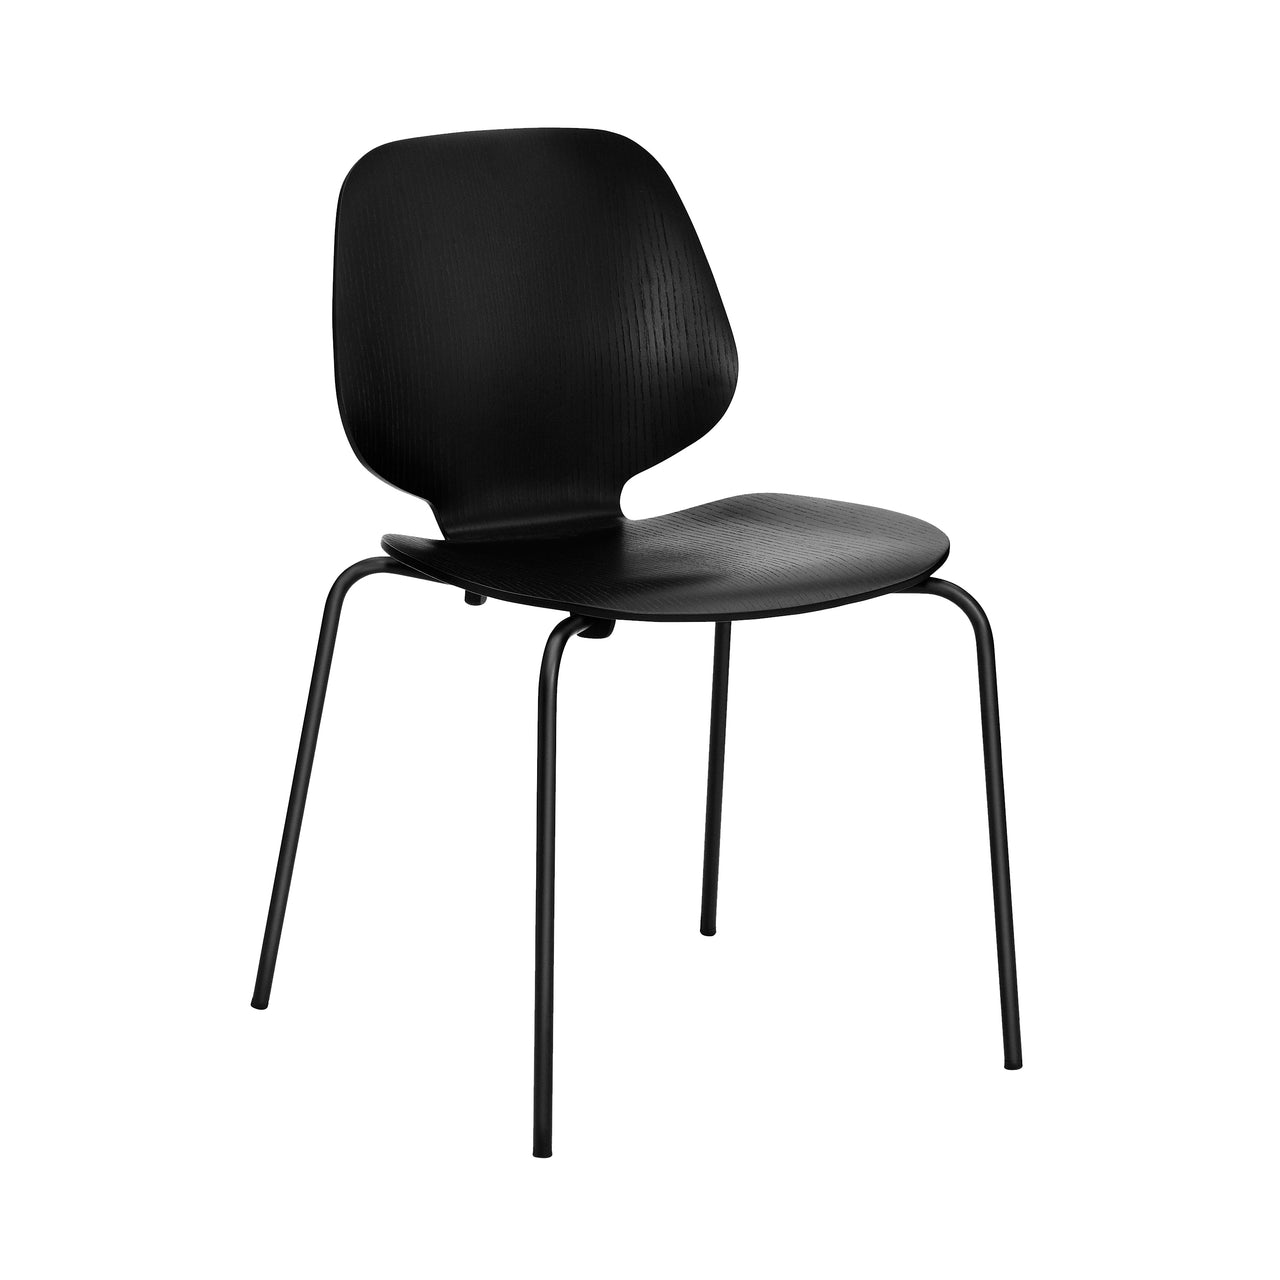 My Chair: Metal Base + Black + Black Steel